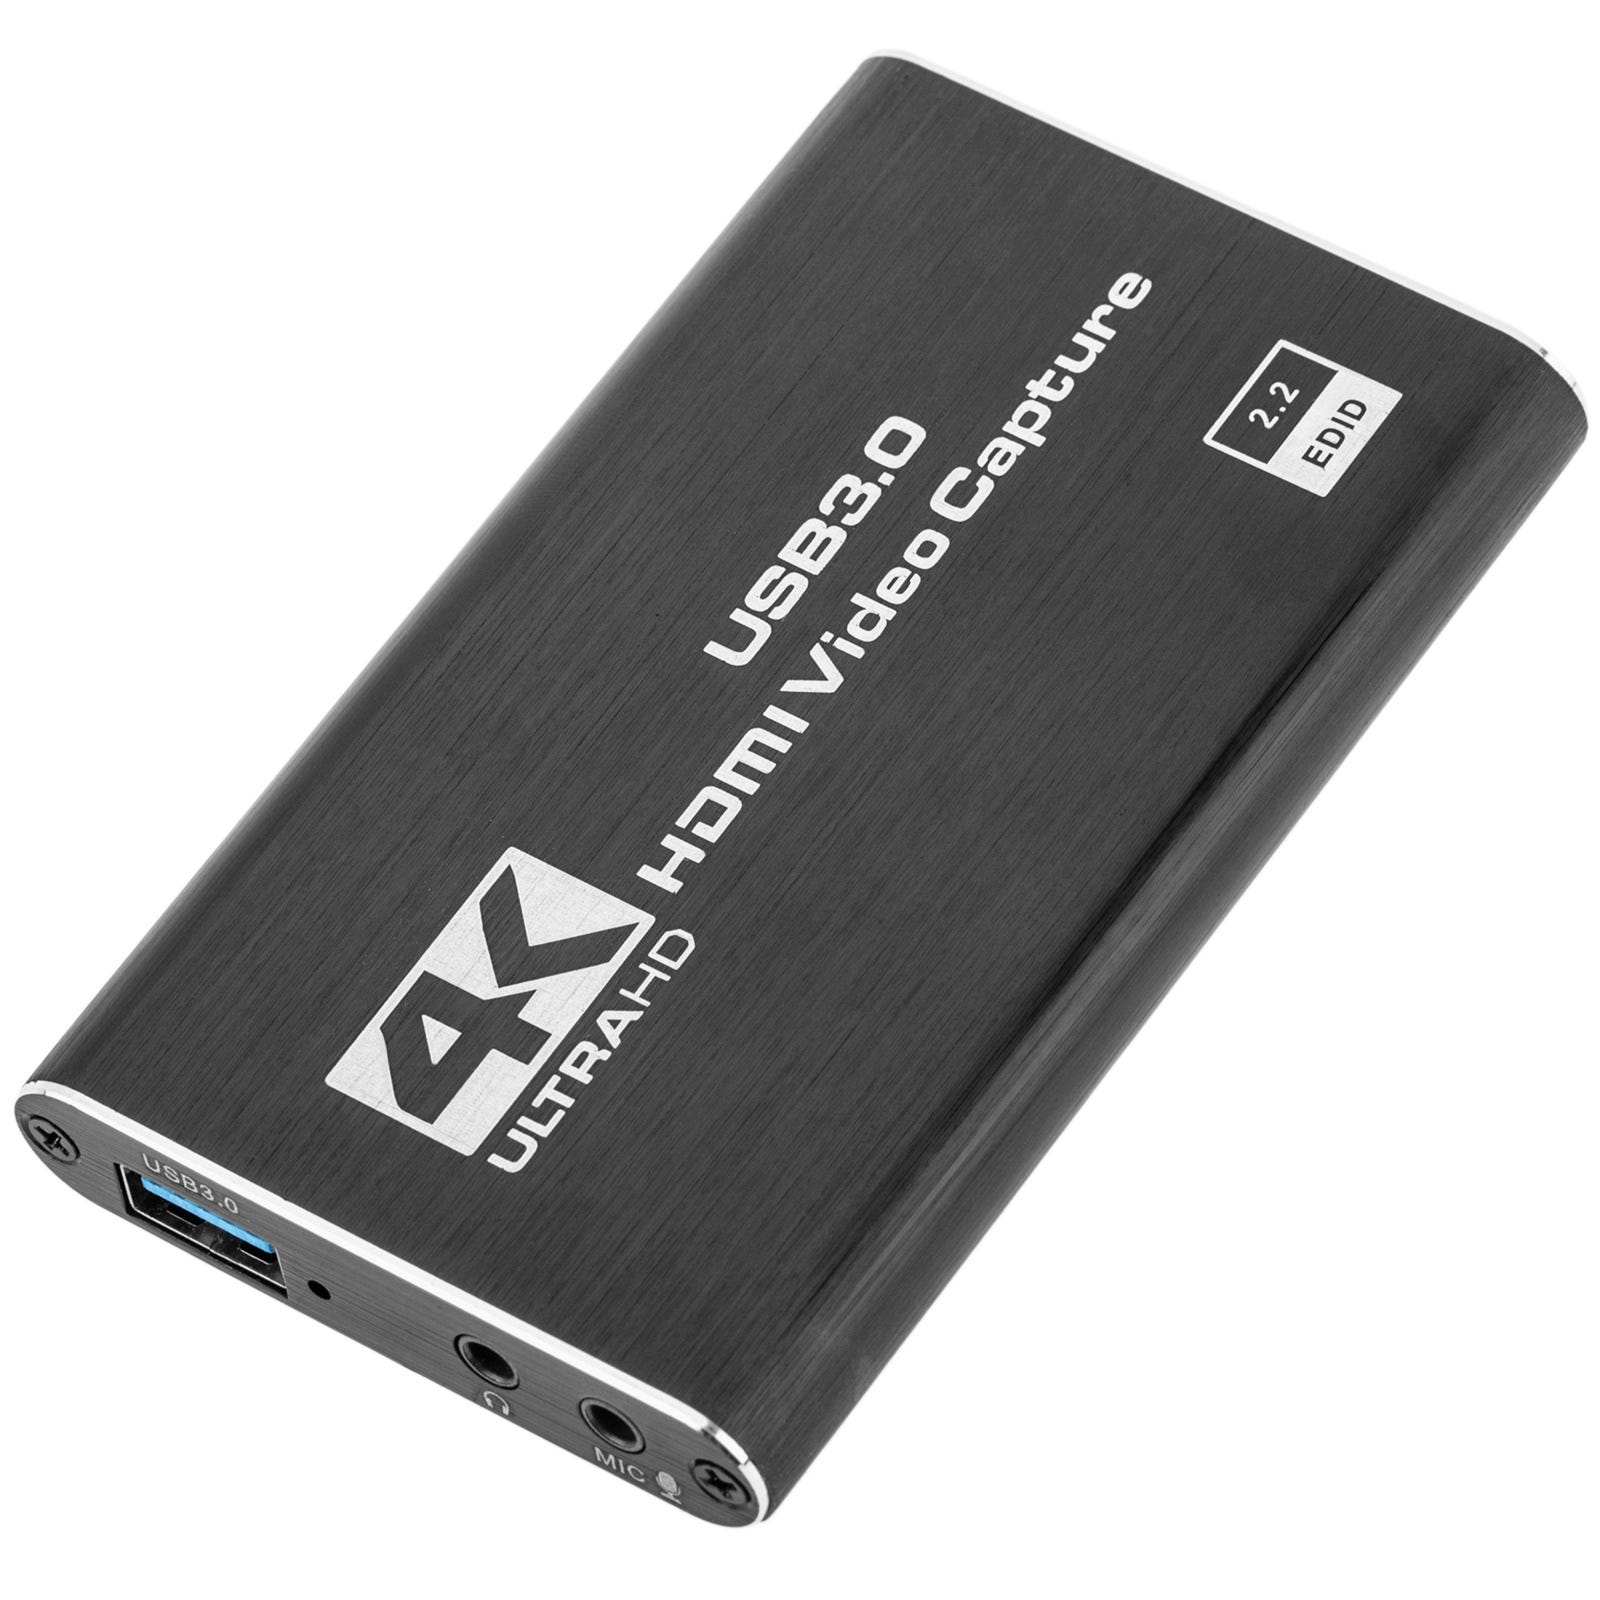 Capturadora de Video HDMI 1080P a USB 3.0 – Cables y Conectores